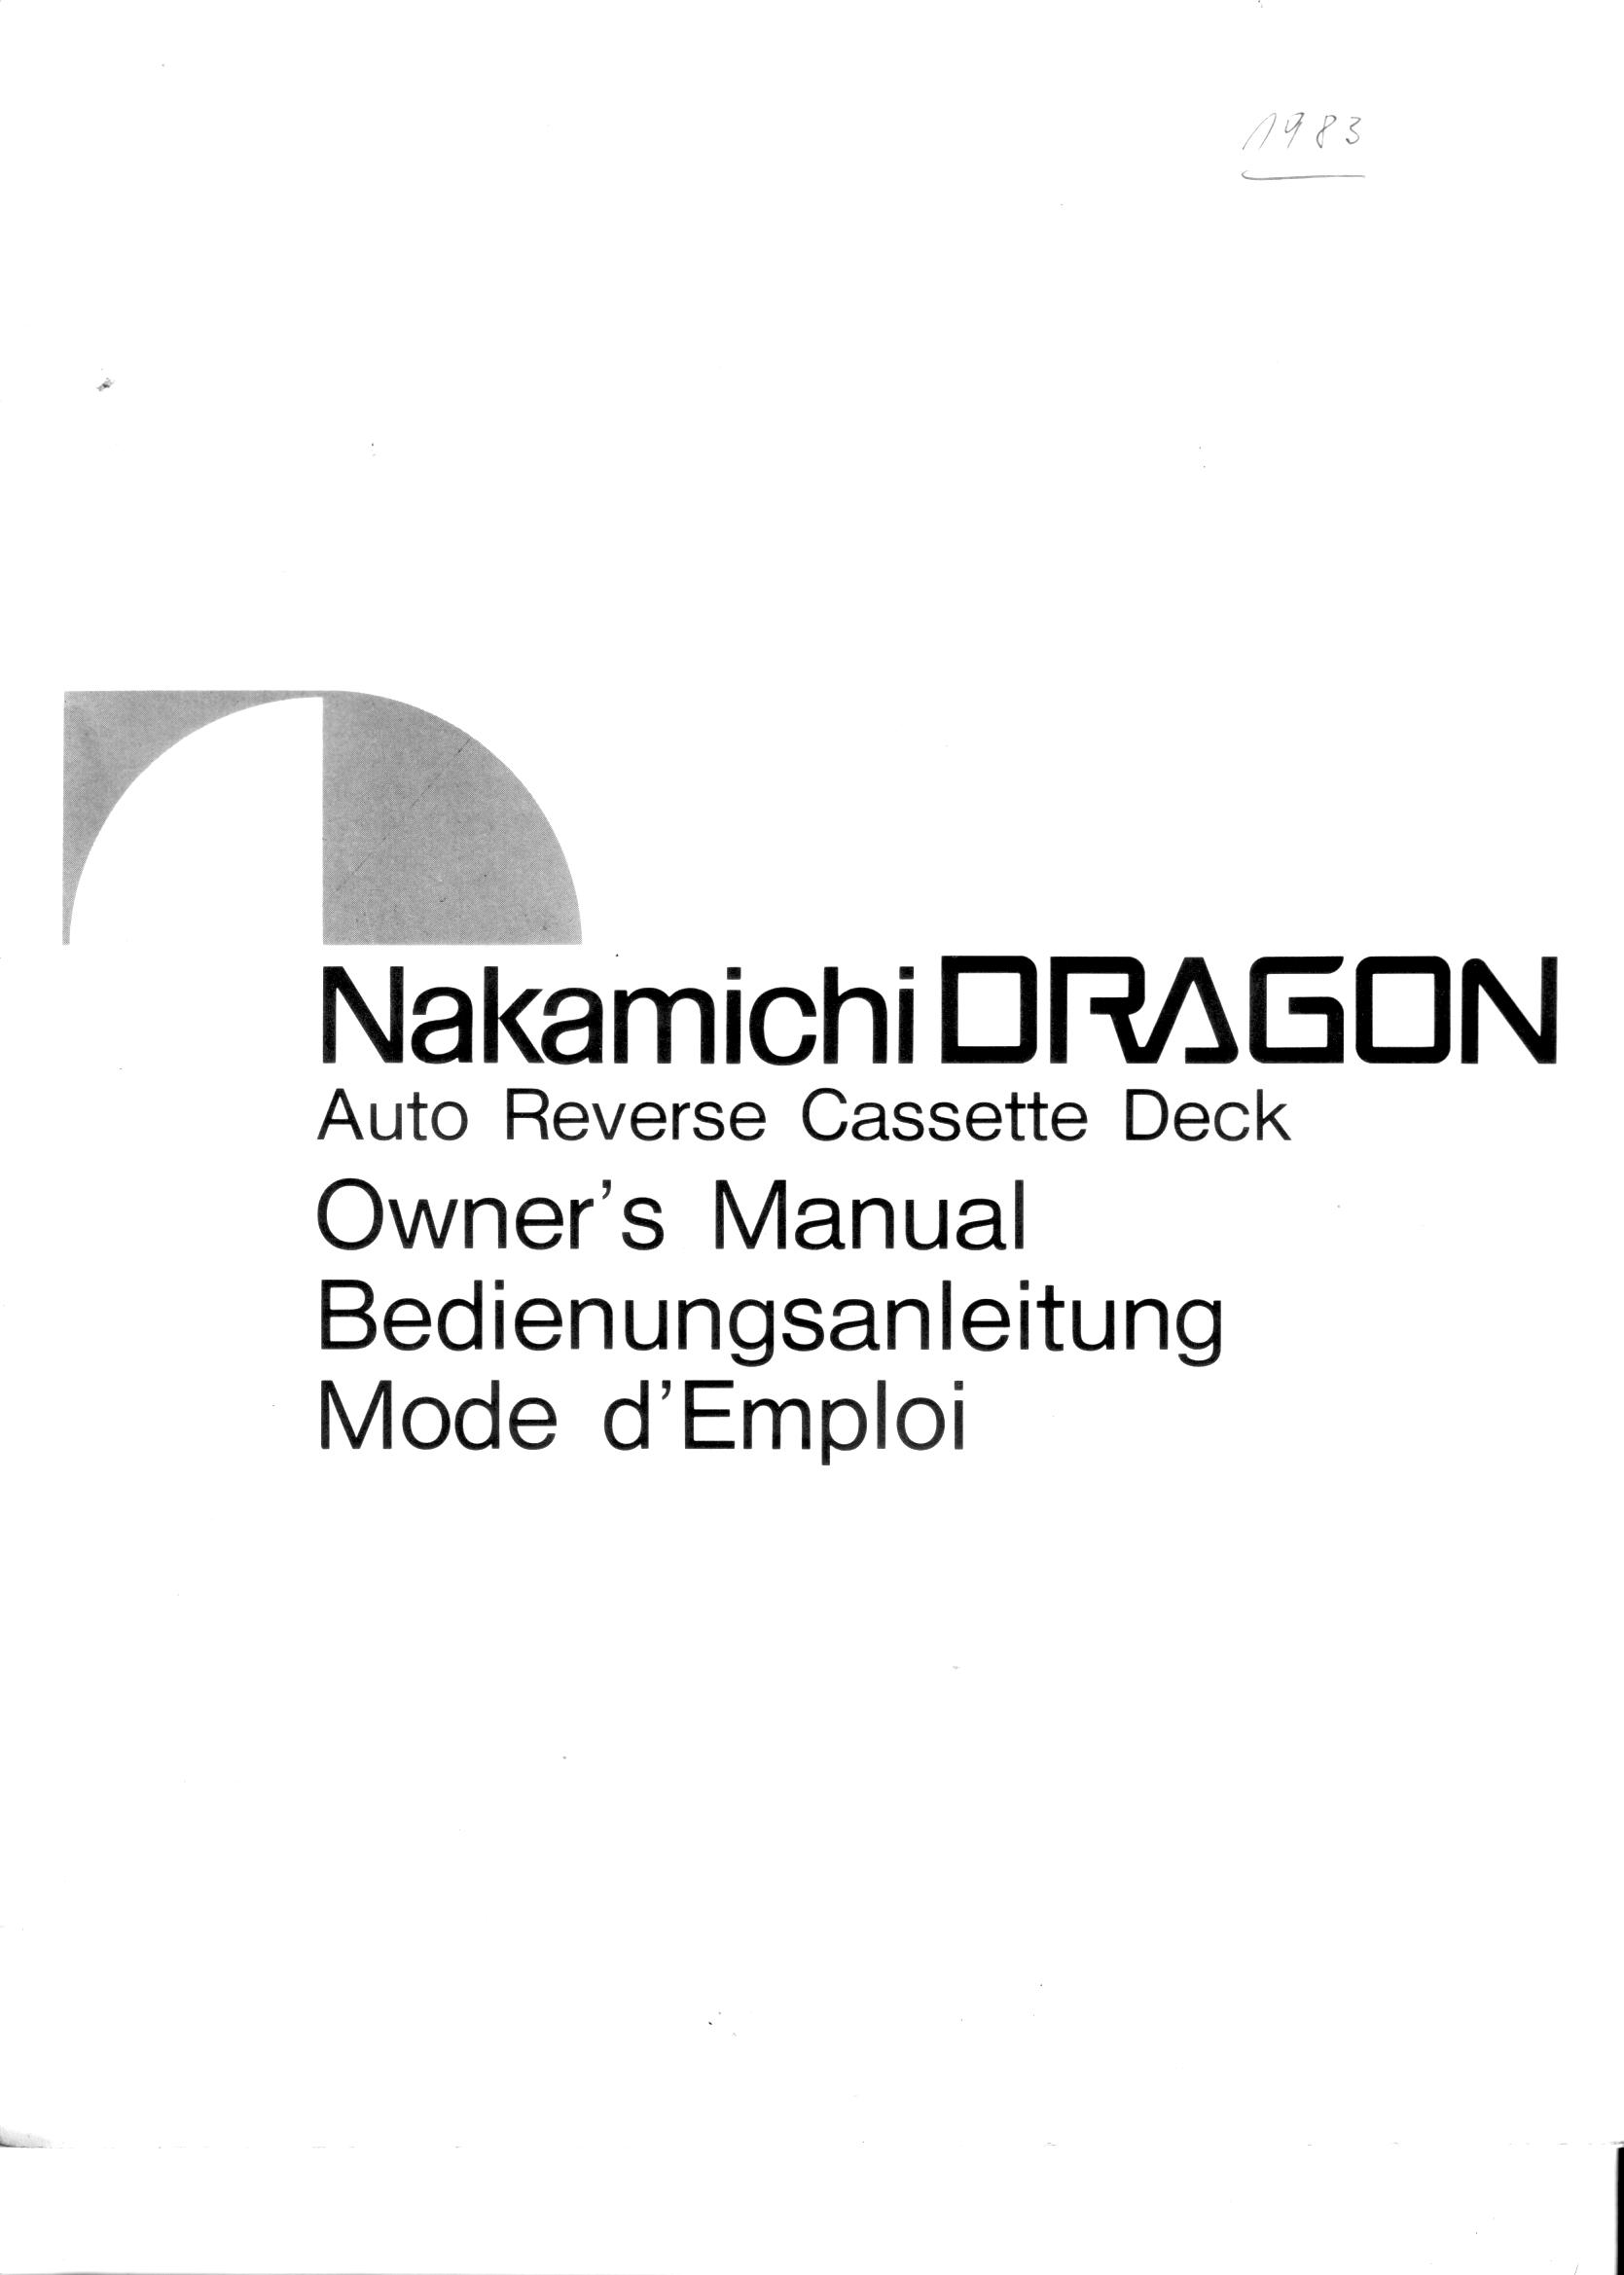 Nakamichi Dragon Manual